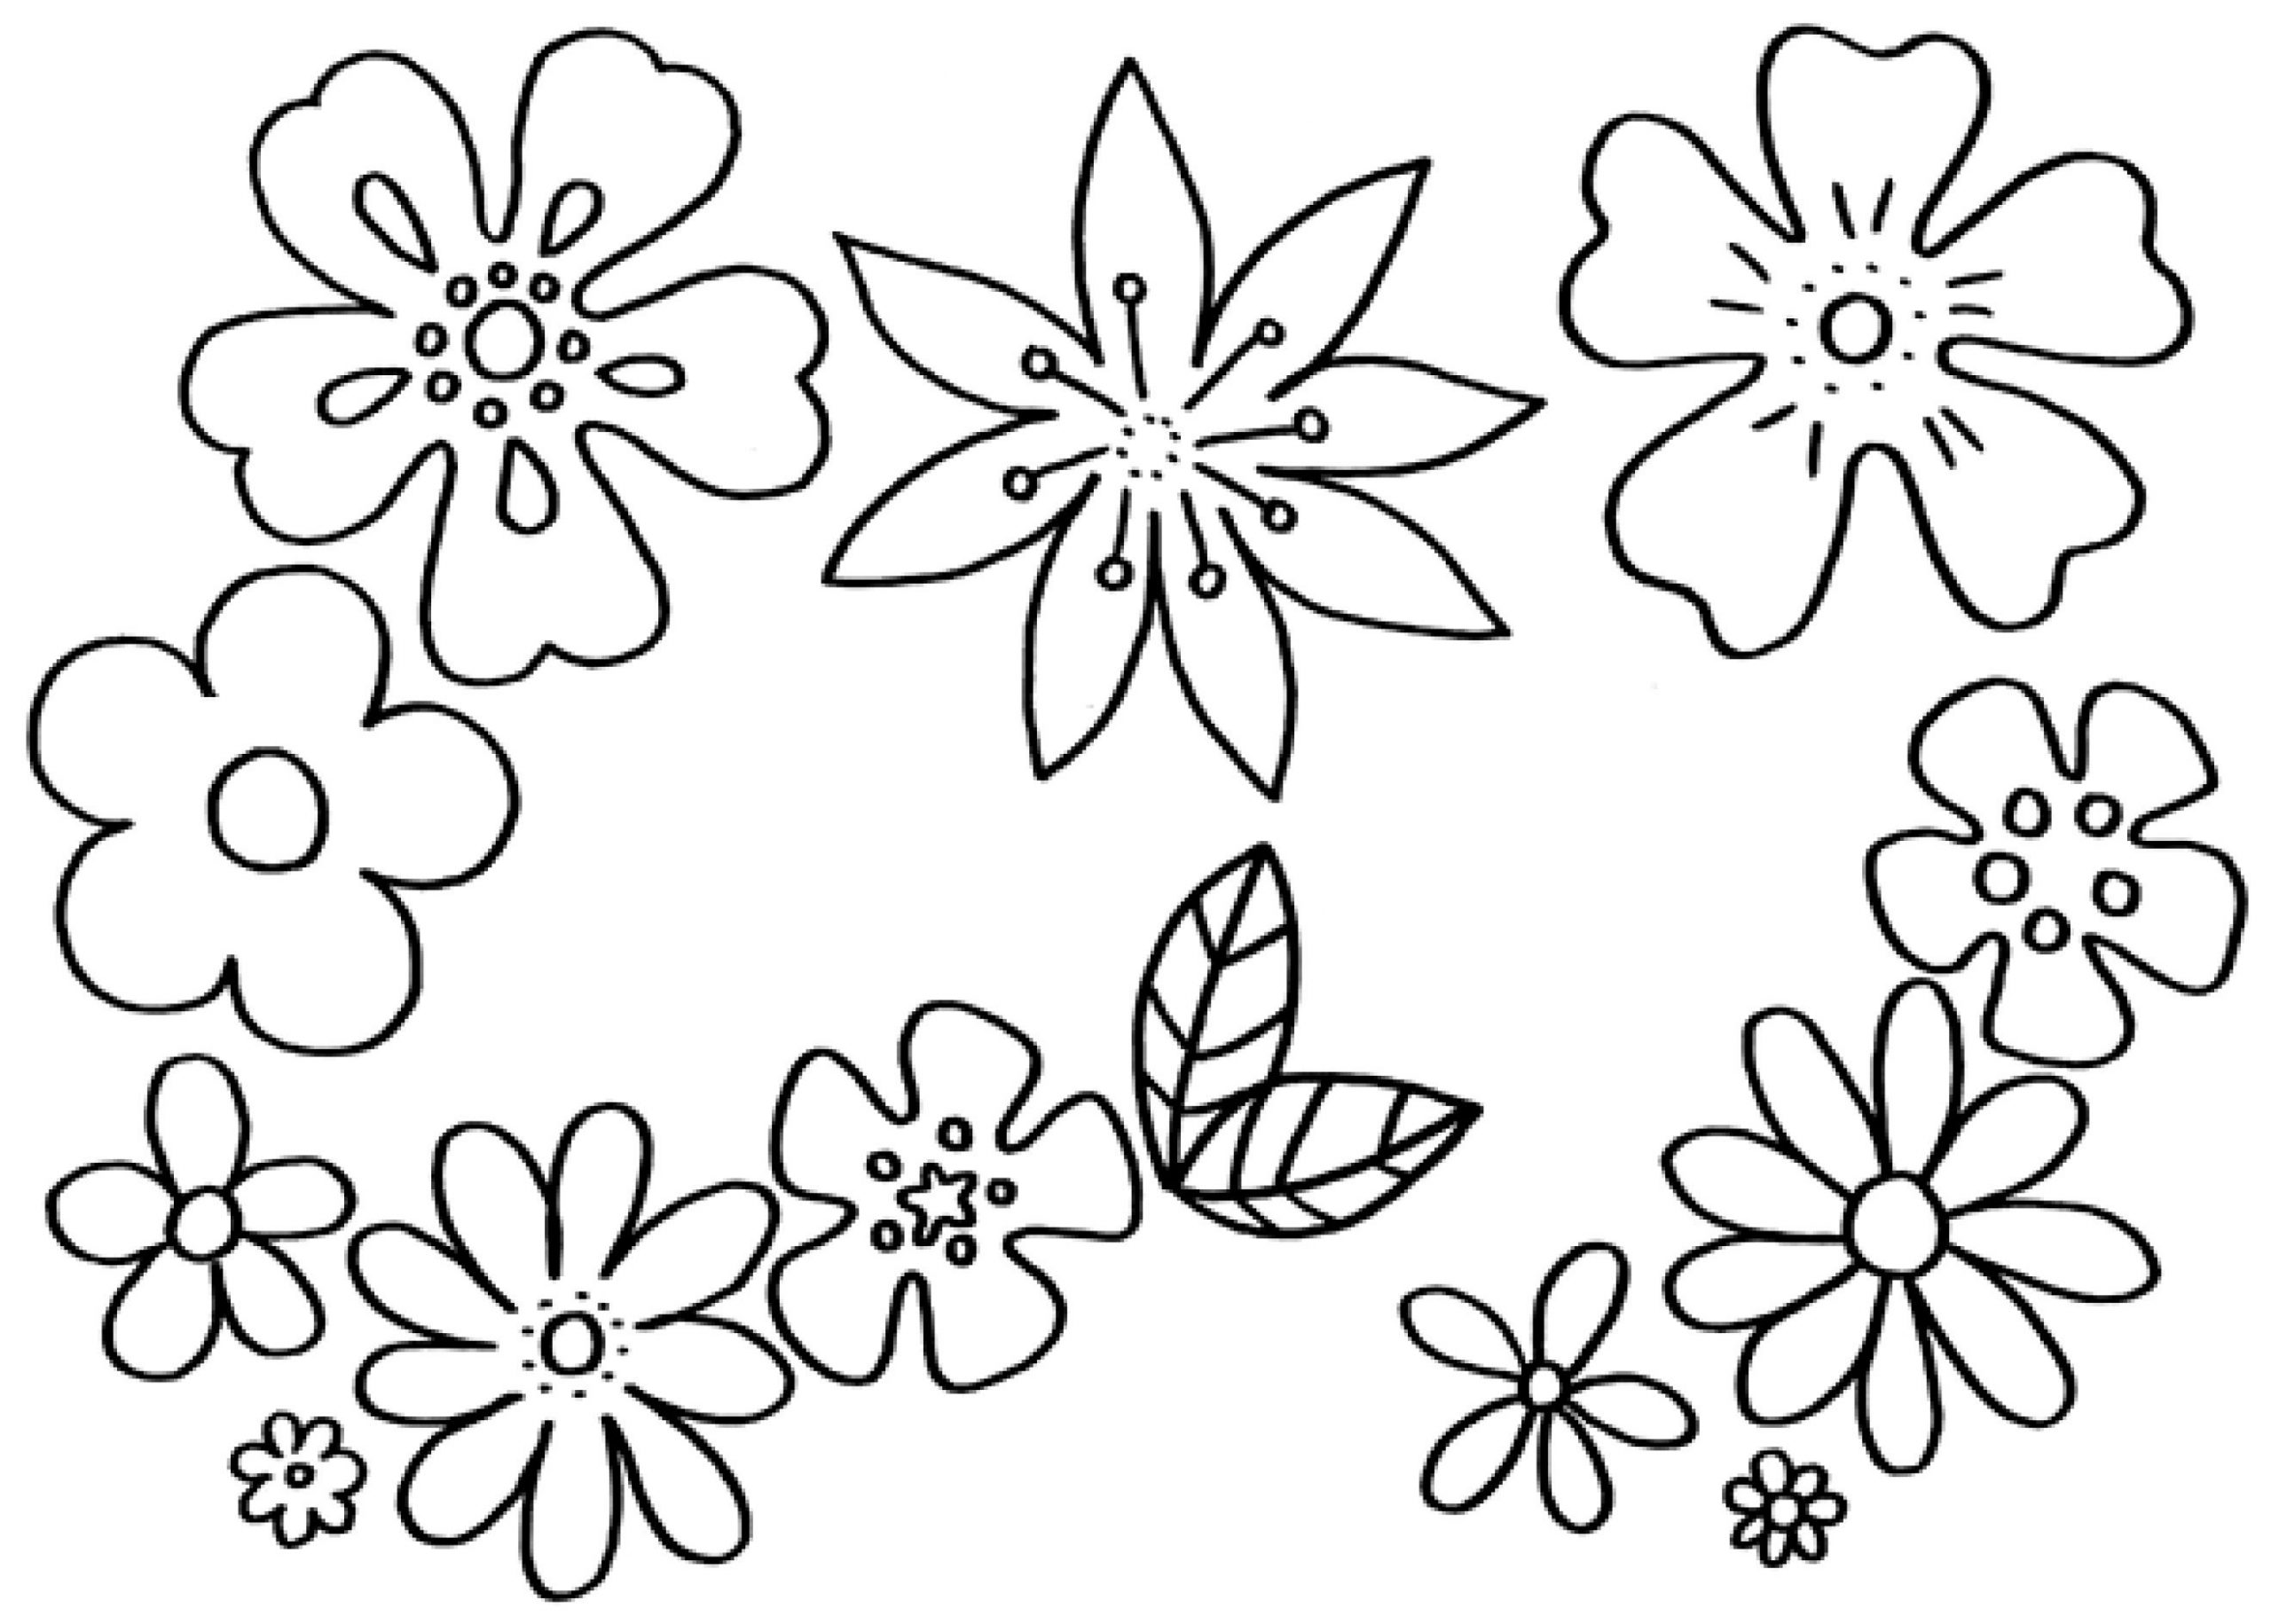 Malvorlagen Blumen - Kostenlose Ausmalbilder | Mytoys Blog innen Blumenbilder Zum Ausmalen